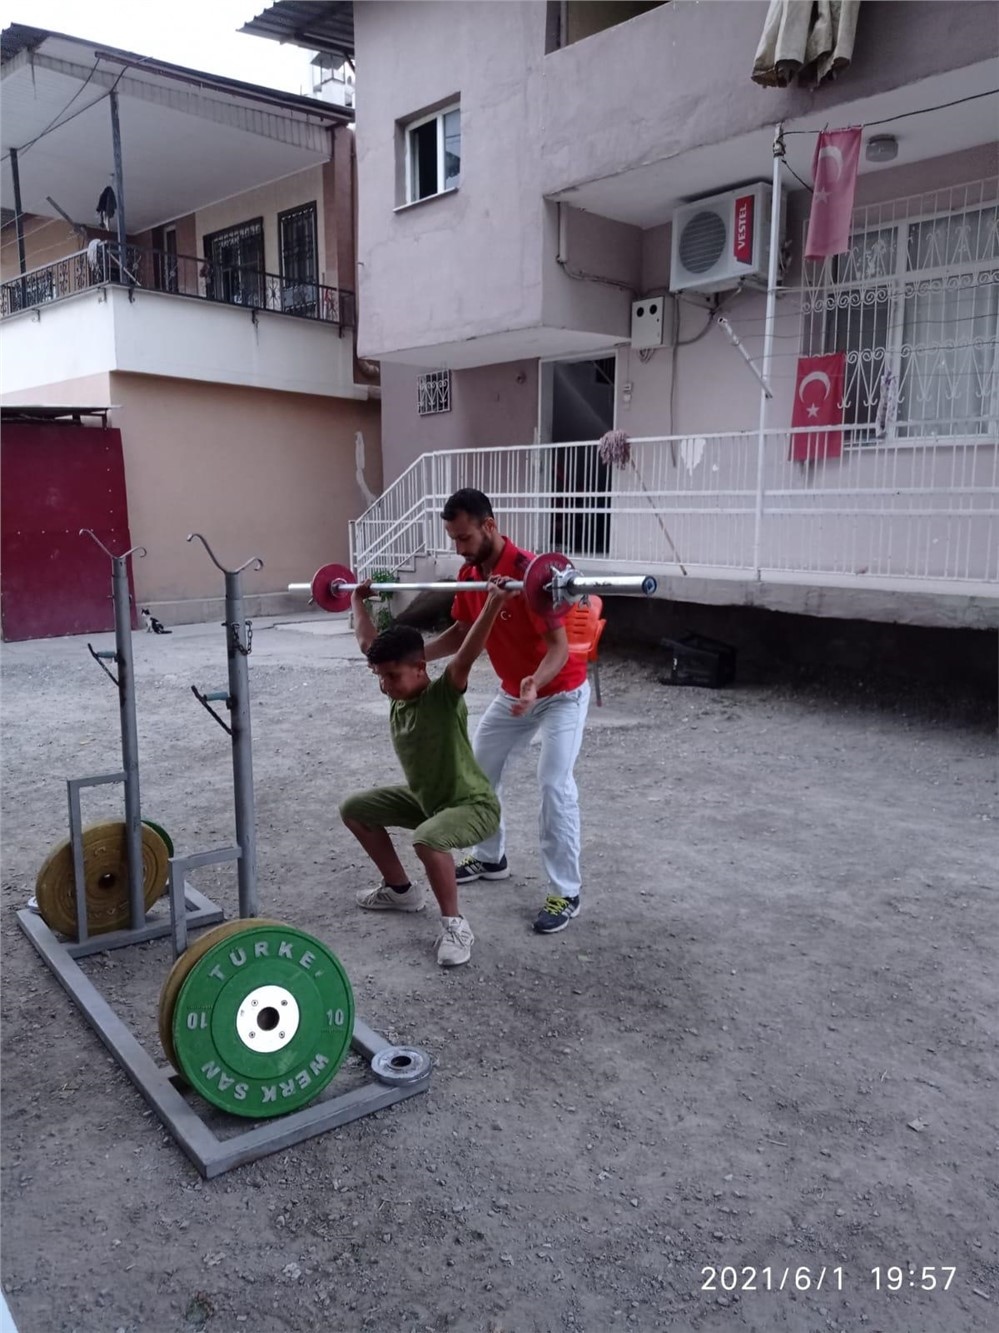 Mersin’in Tarsus İlçesinde Spor Tutkunu Gençler, Kendi İmkanları İle Sokakları Spor Salonuna Çevirip Hayallerine Adın Adım İlerliyor